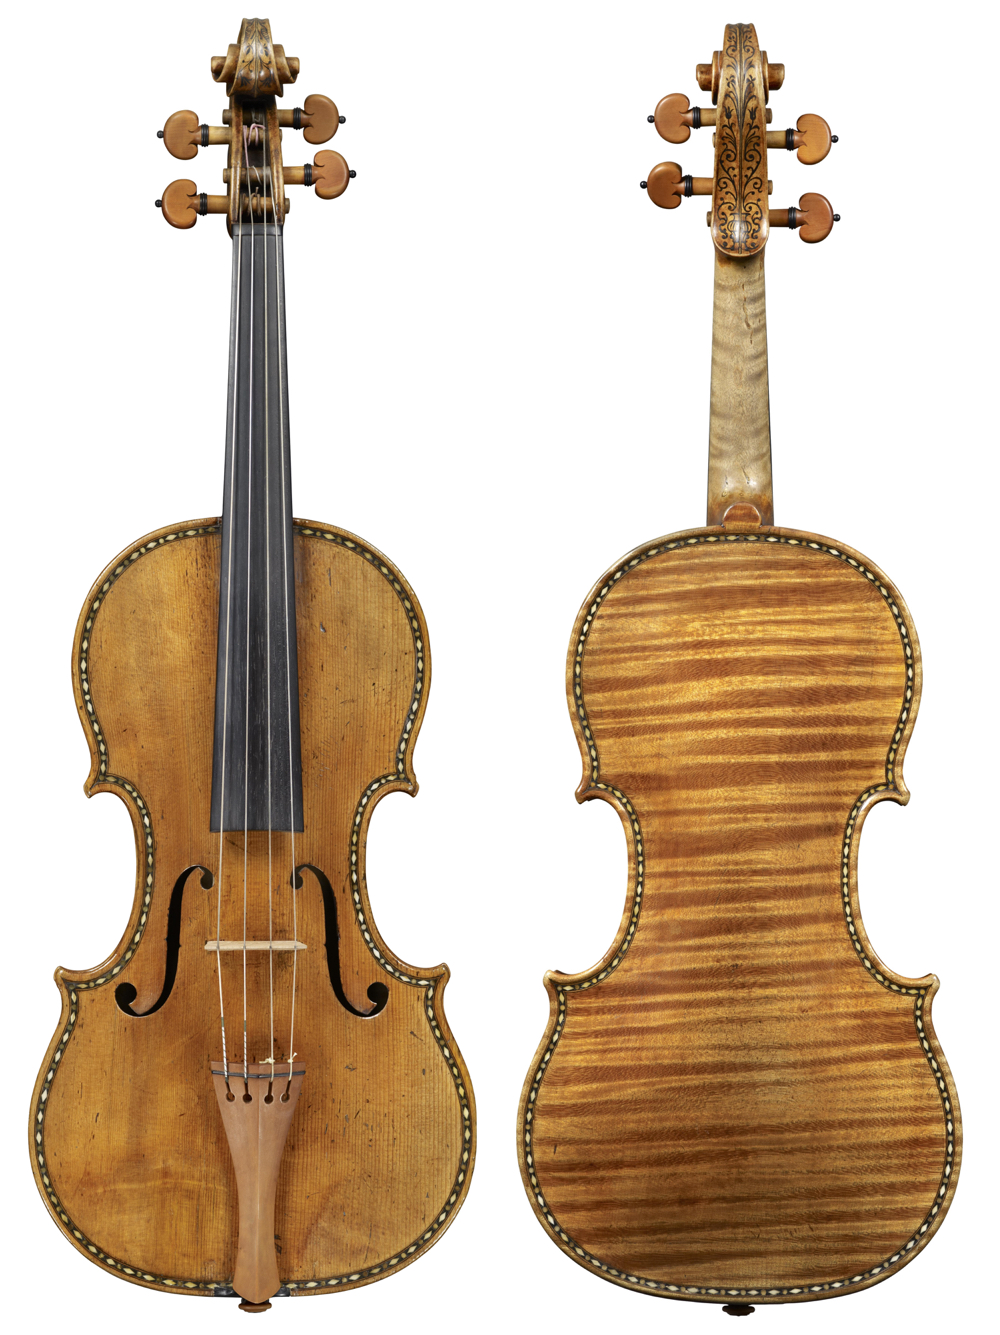 The astonishing 'Sunrise' Stradivari of 1677. Photos: Jan Röhrmann, Antonius Stradiuarius Vol I–IV